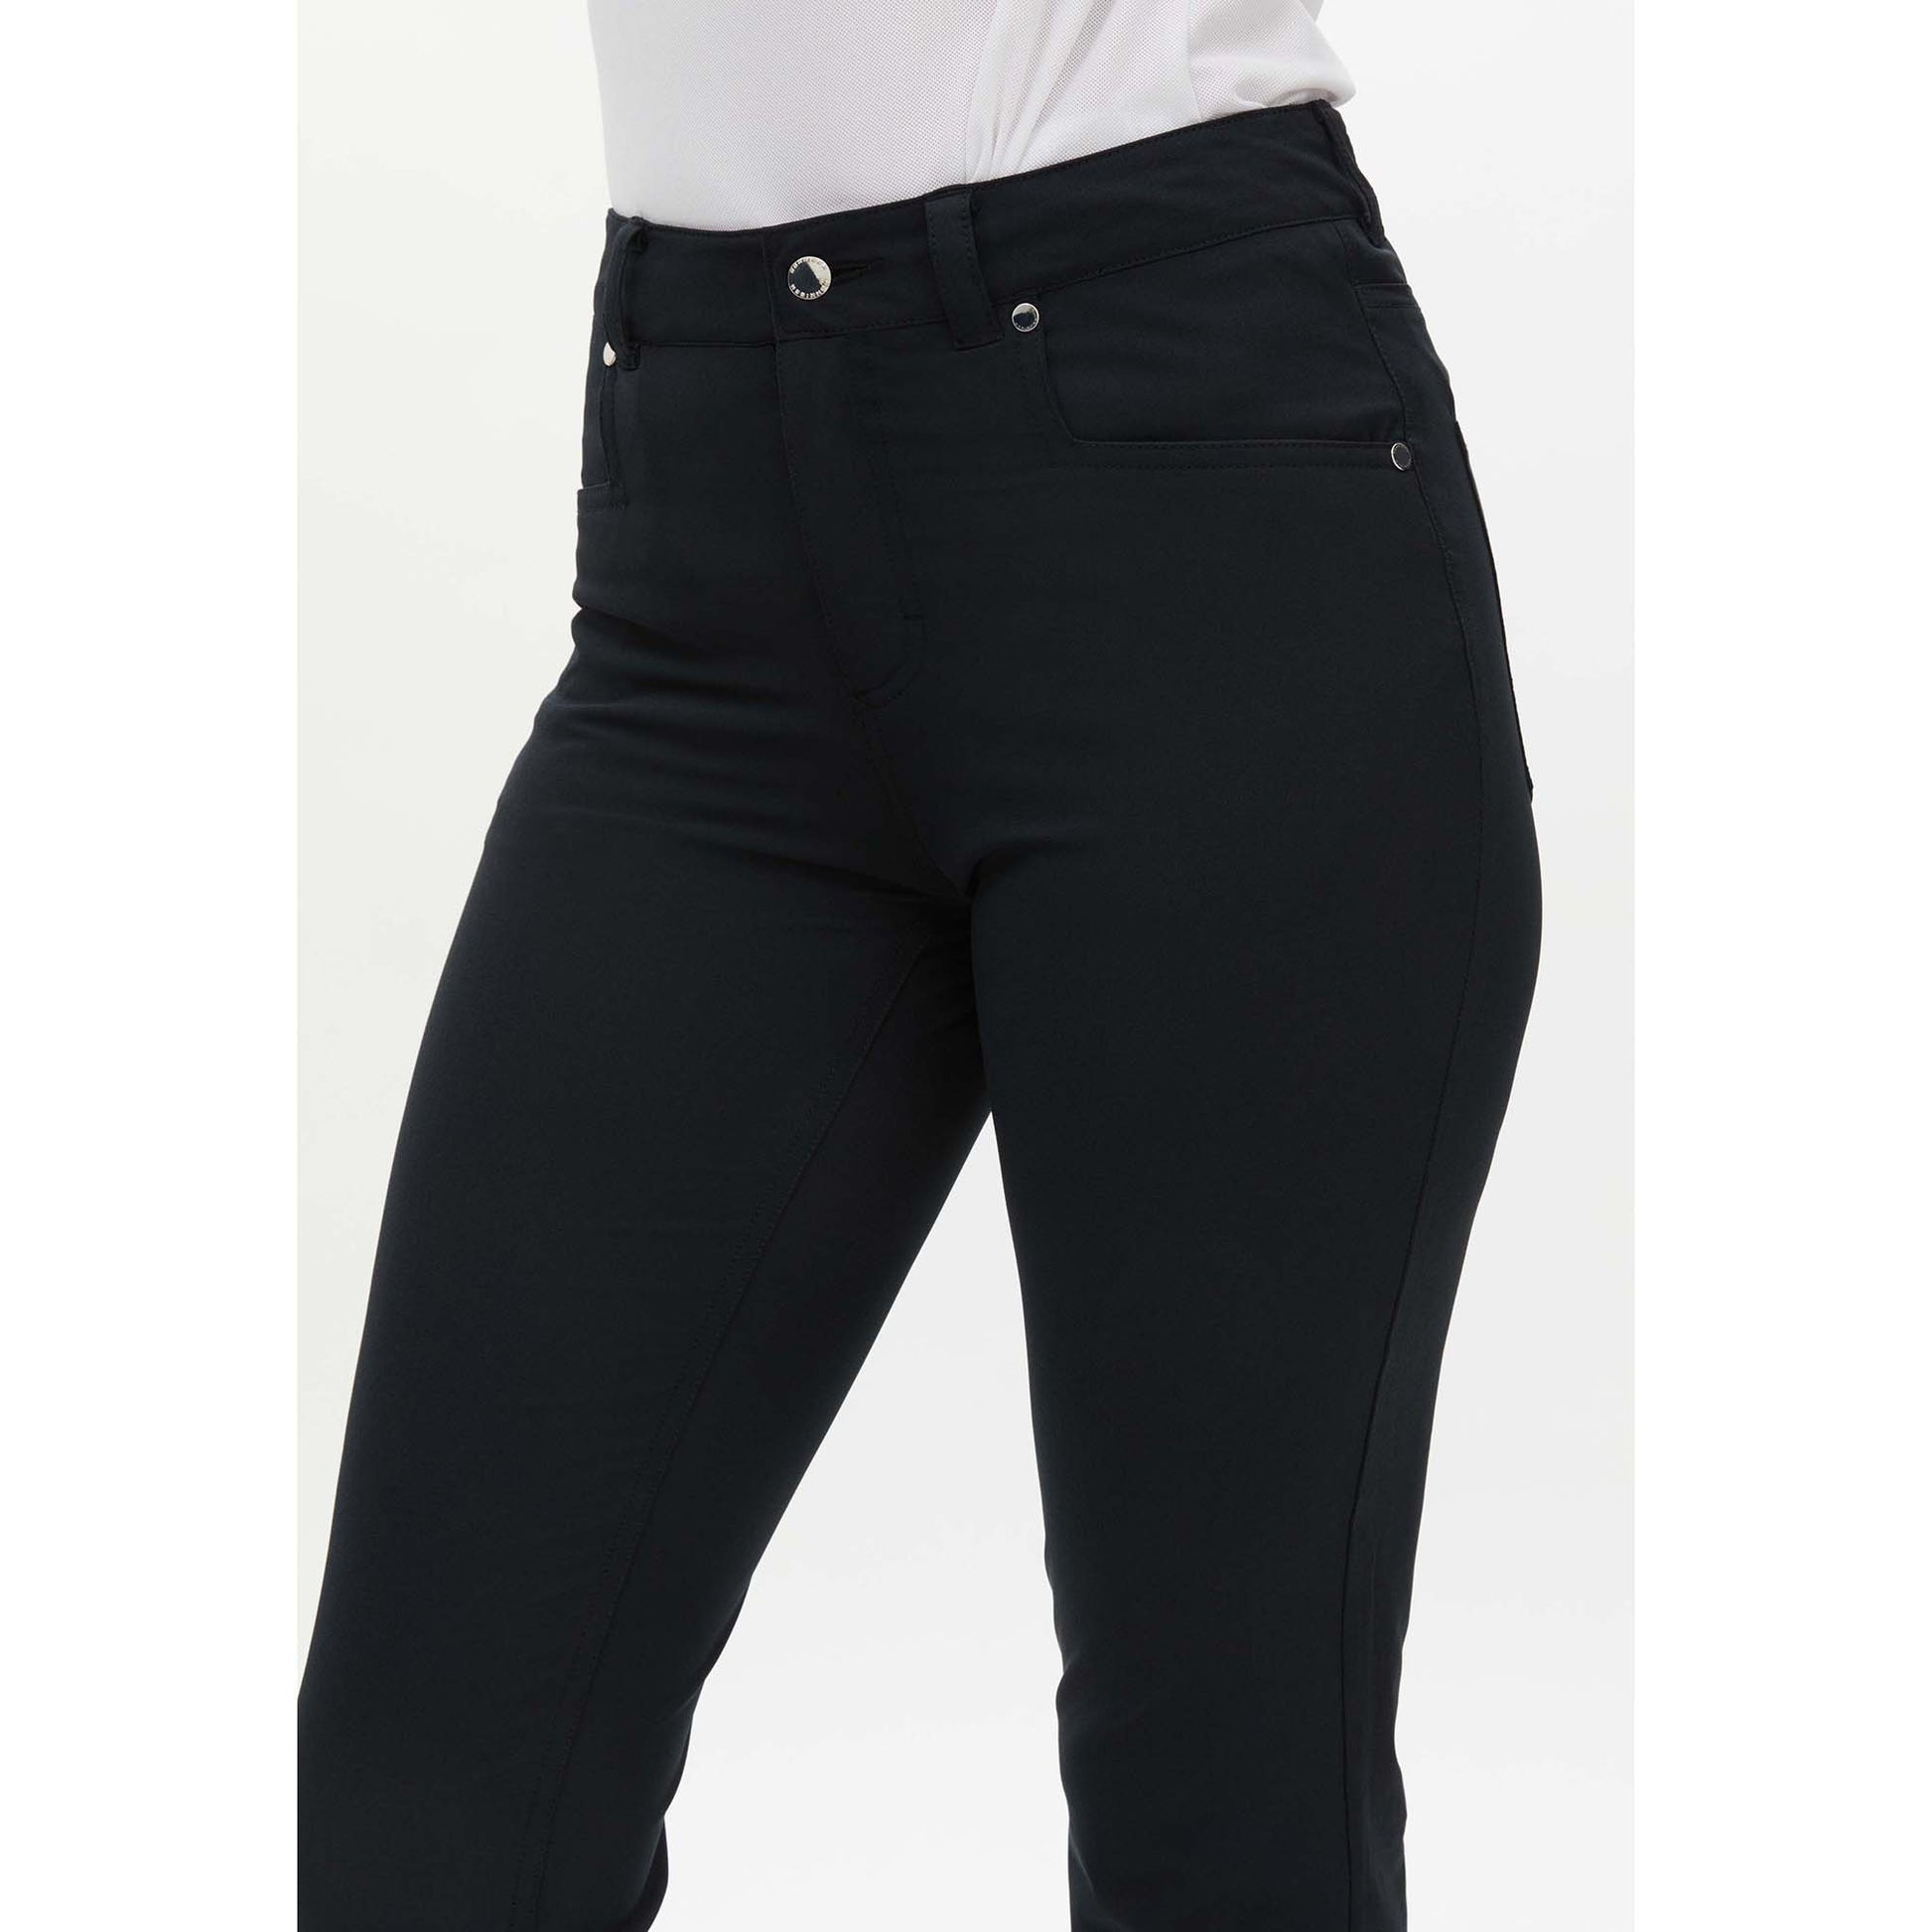 Rohnisch Ladies Lightweight Comfort Trousers in Black